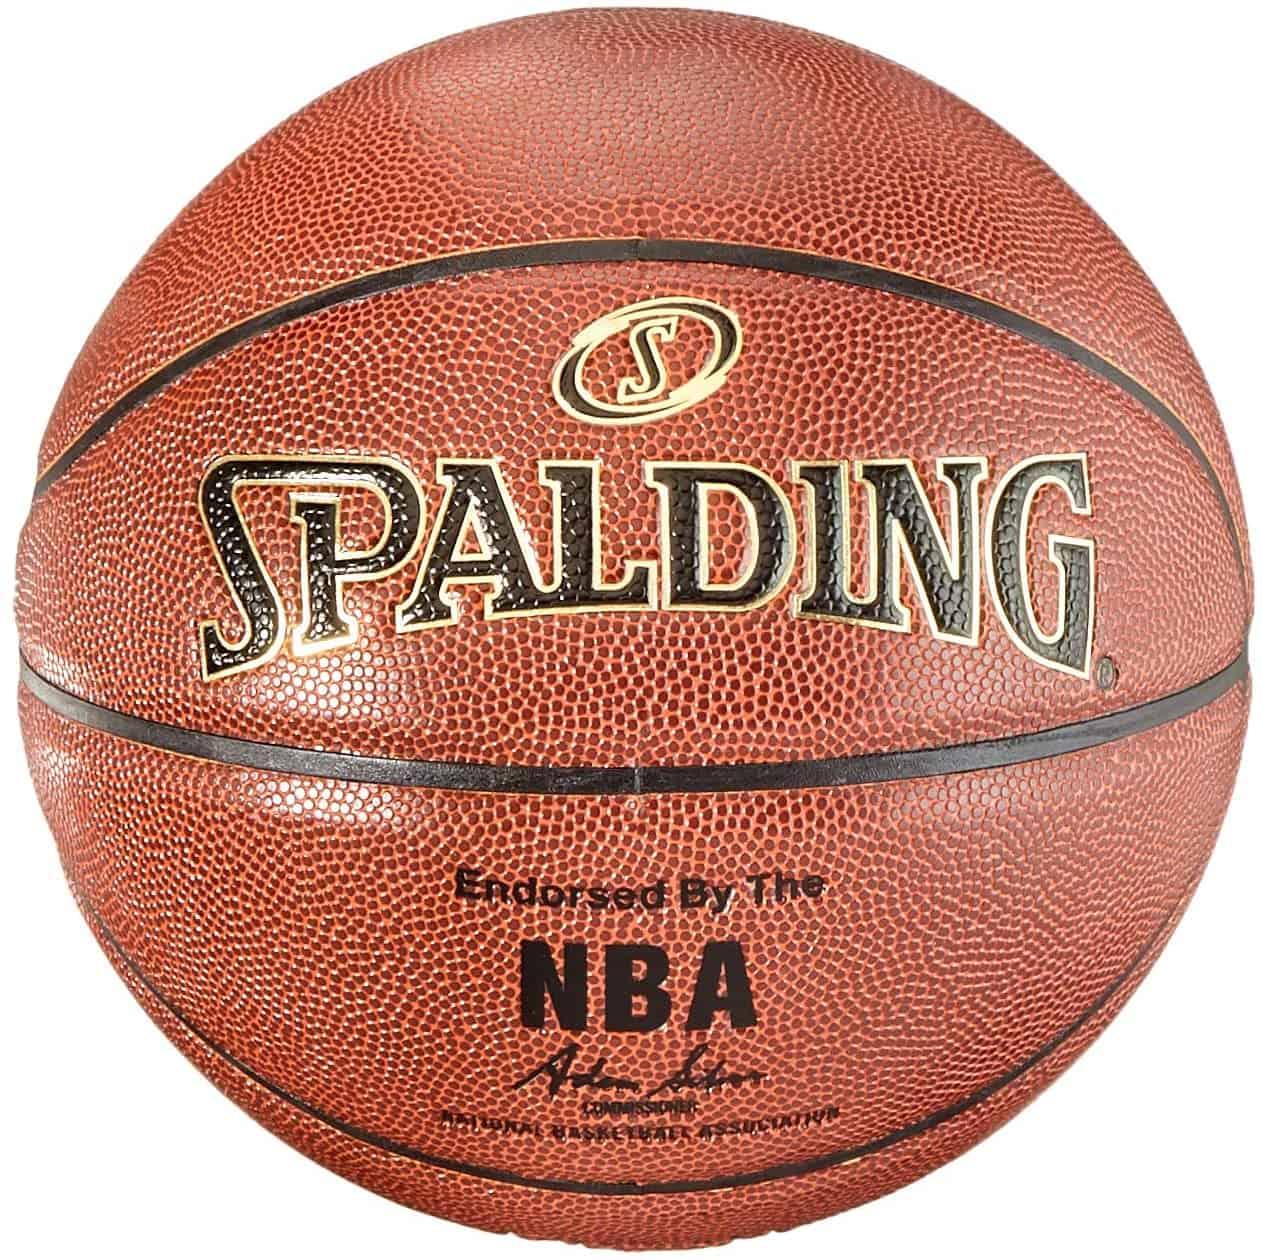 كرة سلة قياس 29.5 بوصة Spalding Nba Gold Series